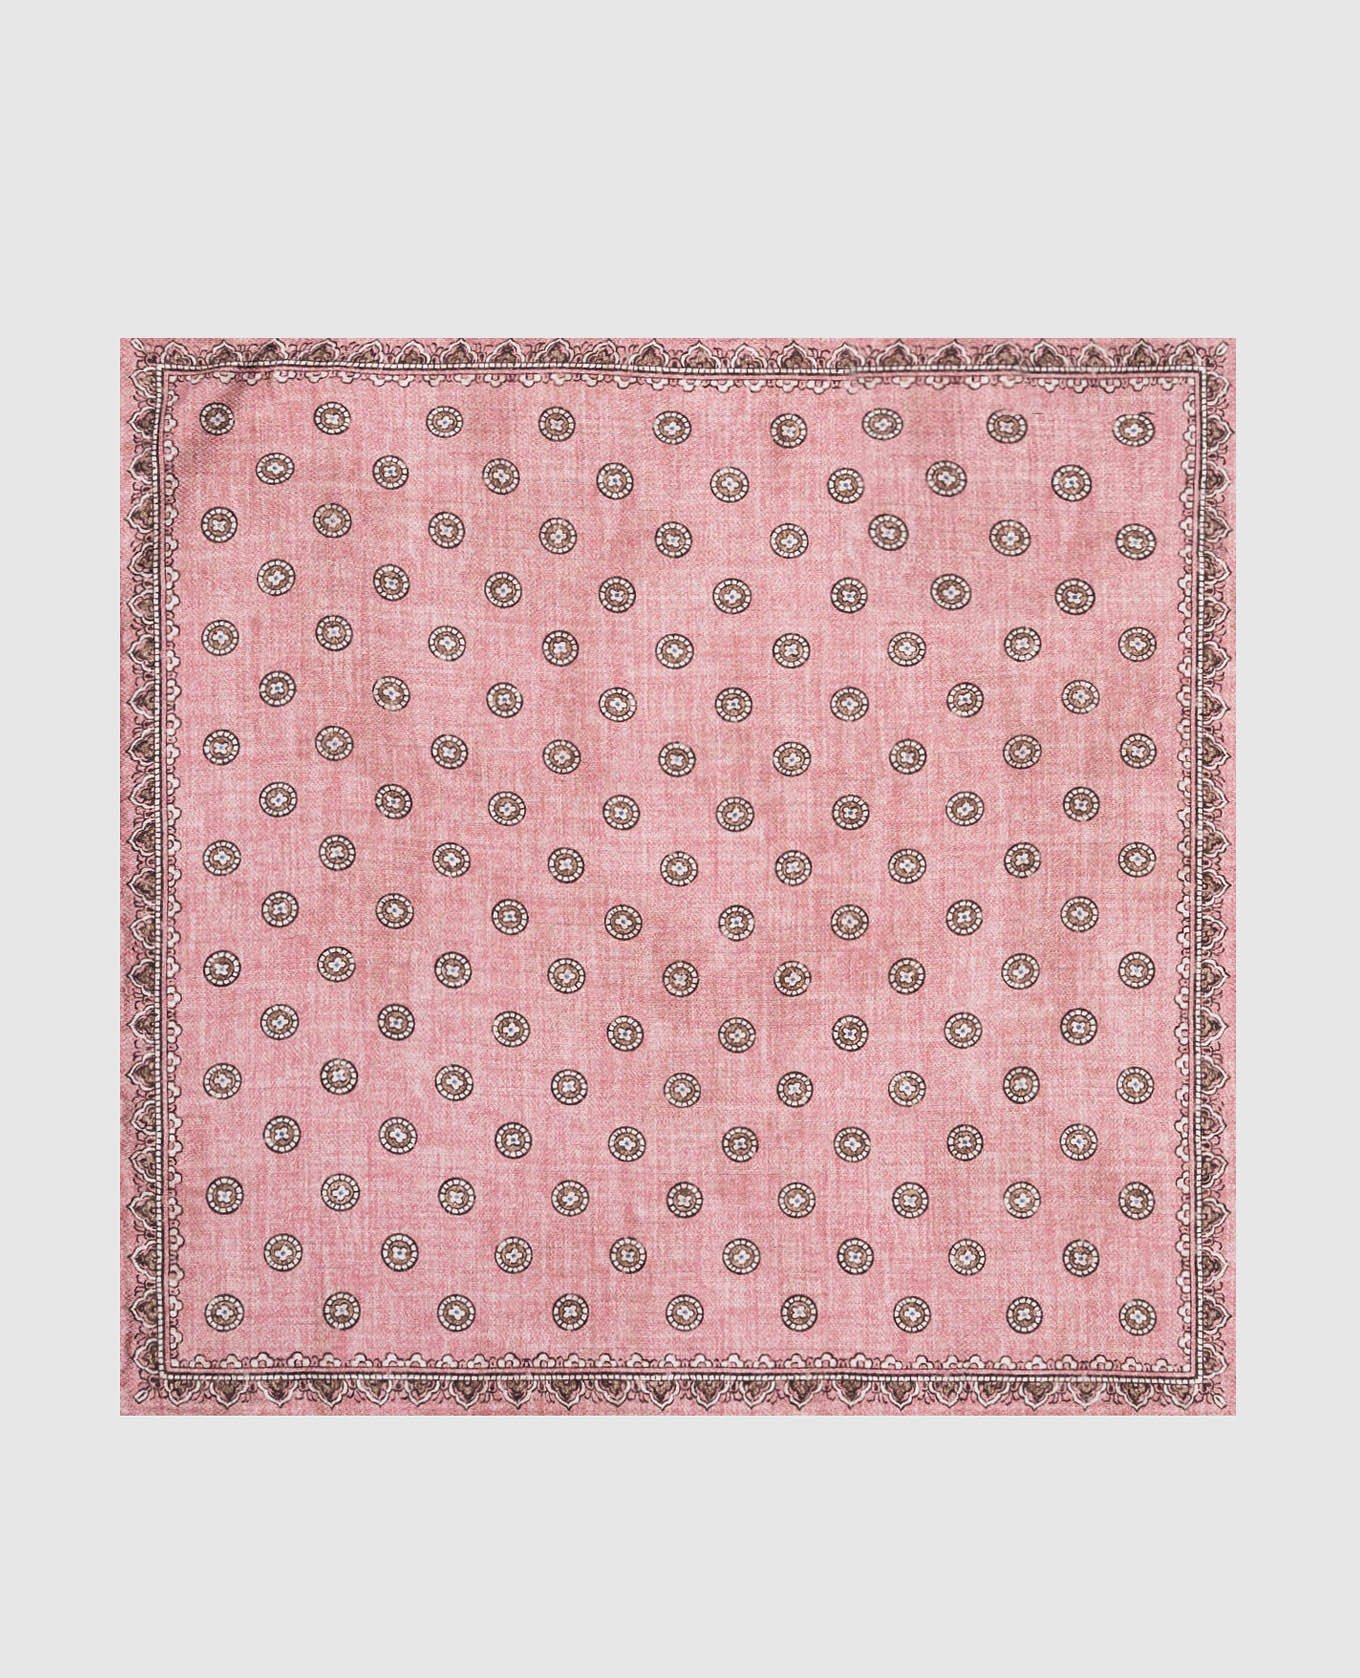 Розовый двухсторонний платок-паше из шелка в узор.